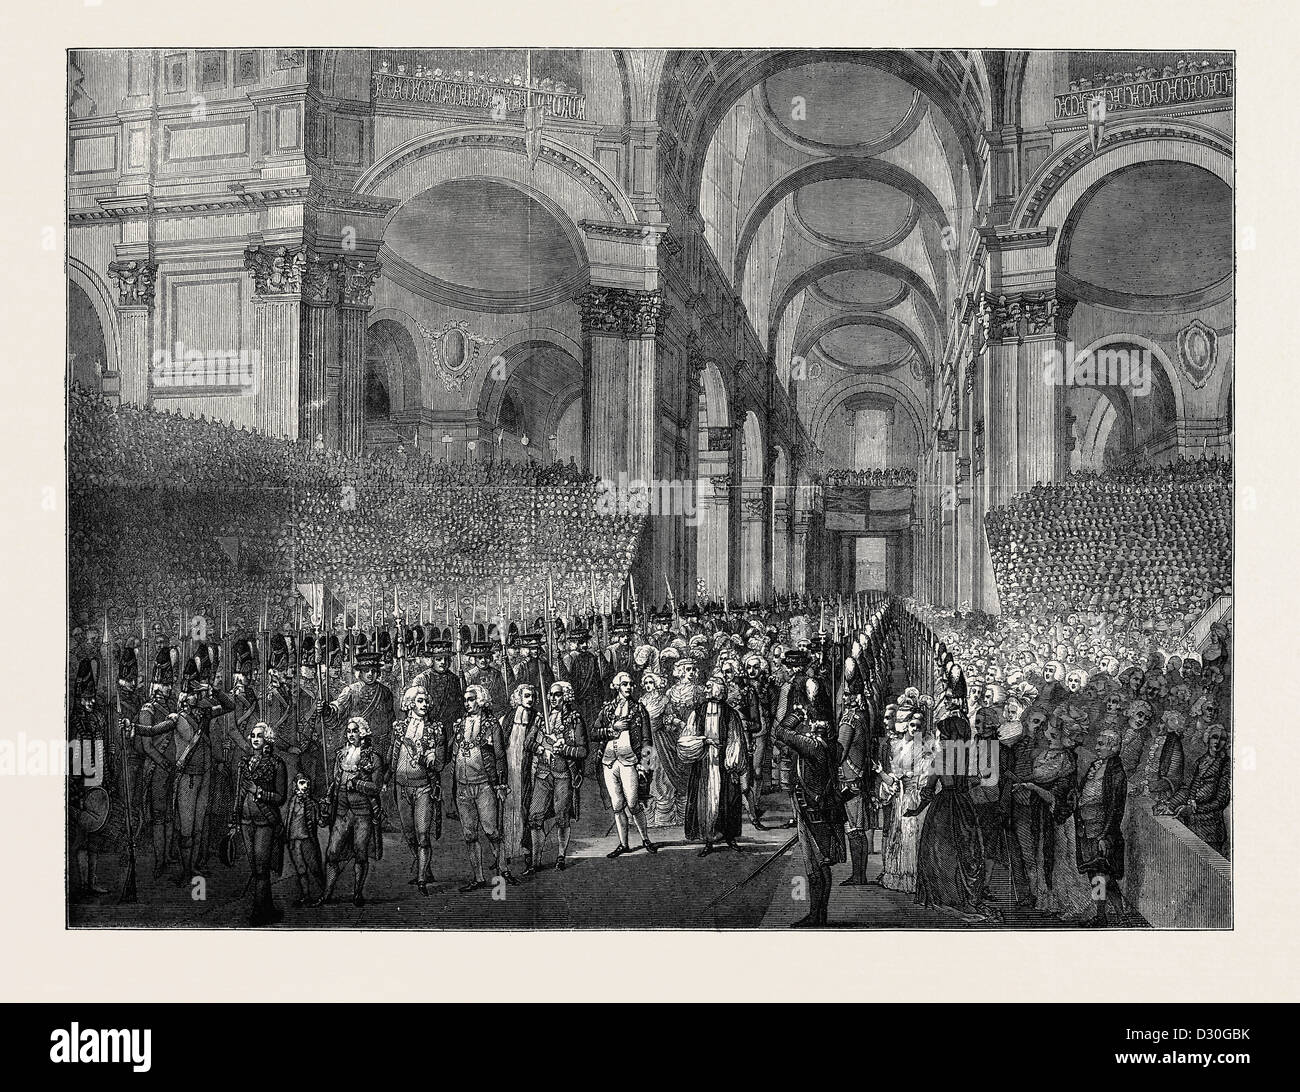 23 avril 1789 : Le roi George III. Visite de ST. PAUL'S après son rétablissement Banque D'Images